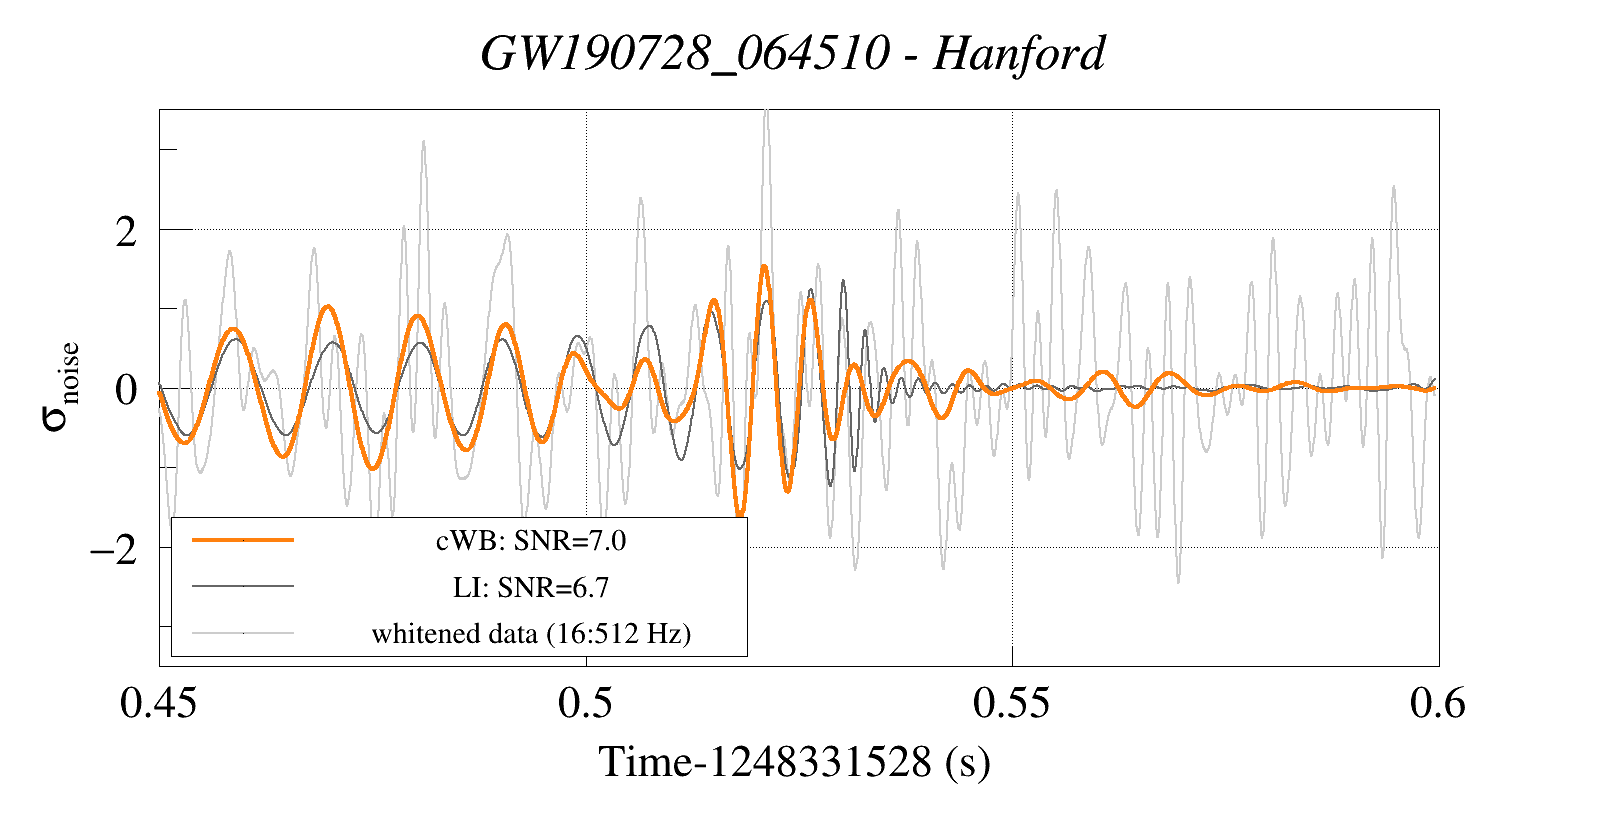 Waveform Reconstruction for GW190728_064510